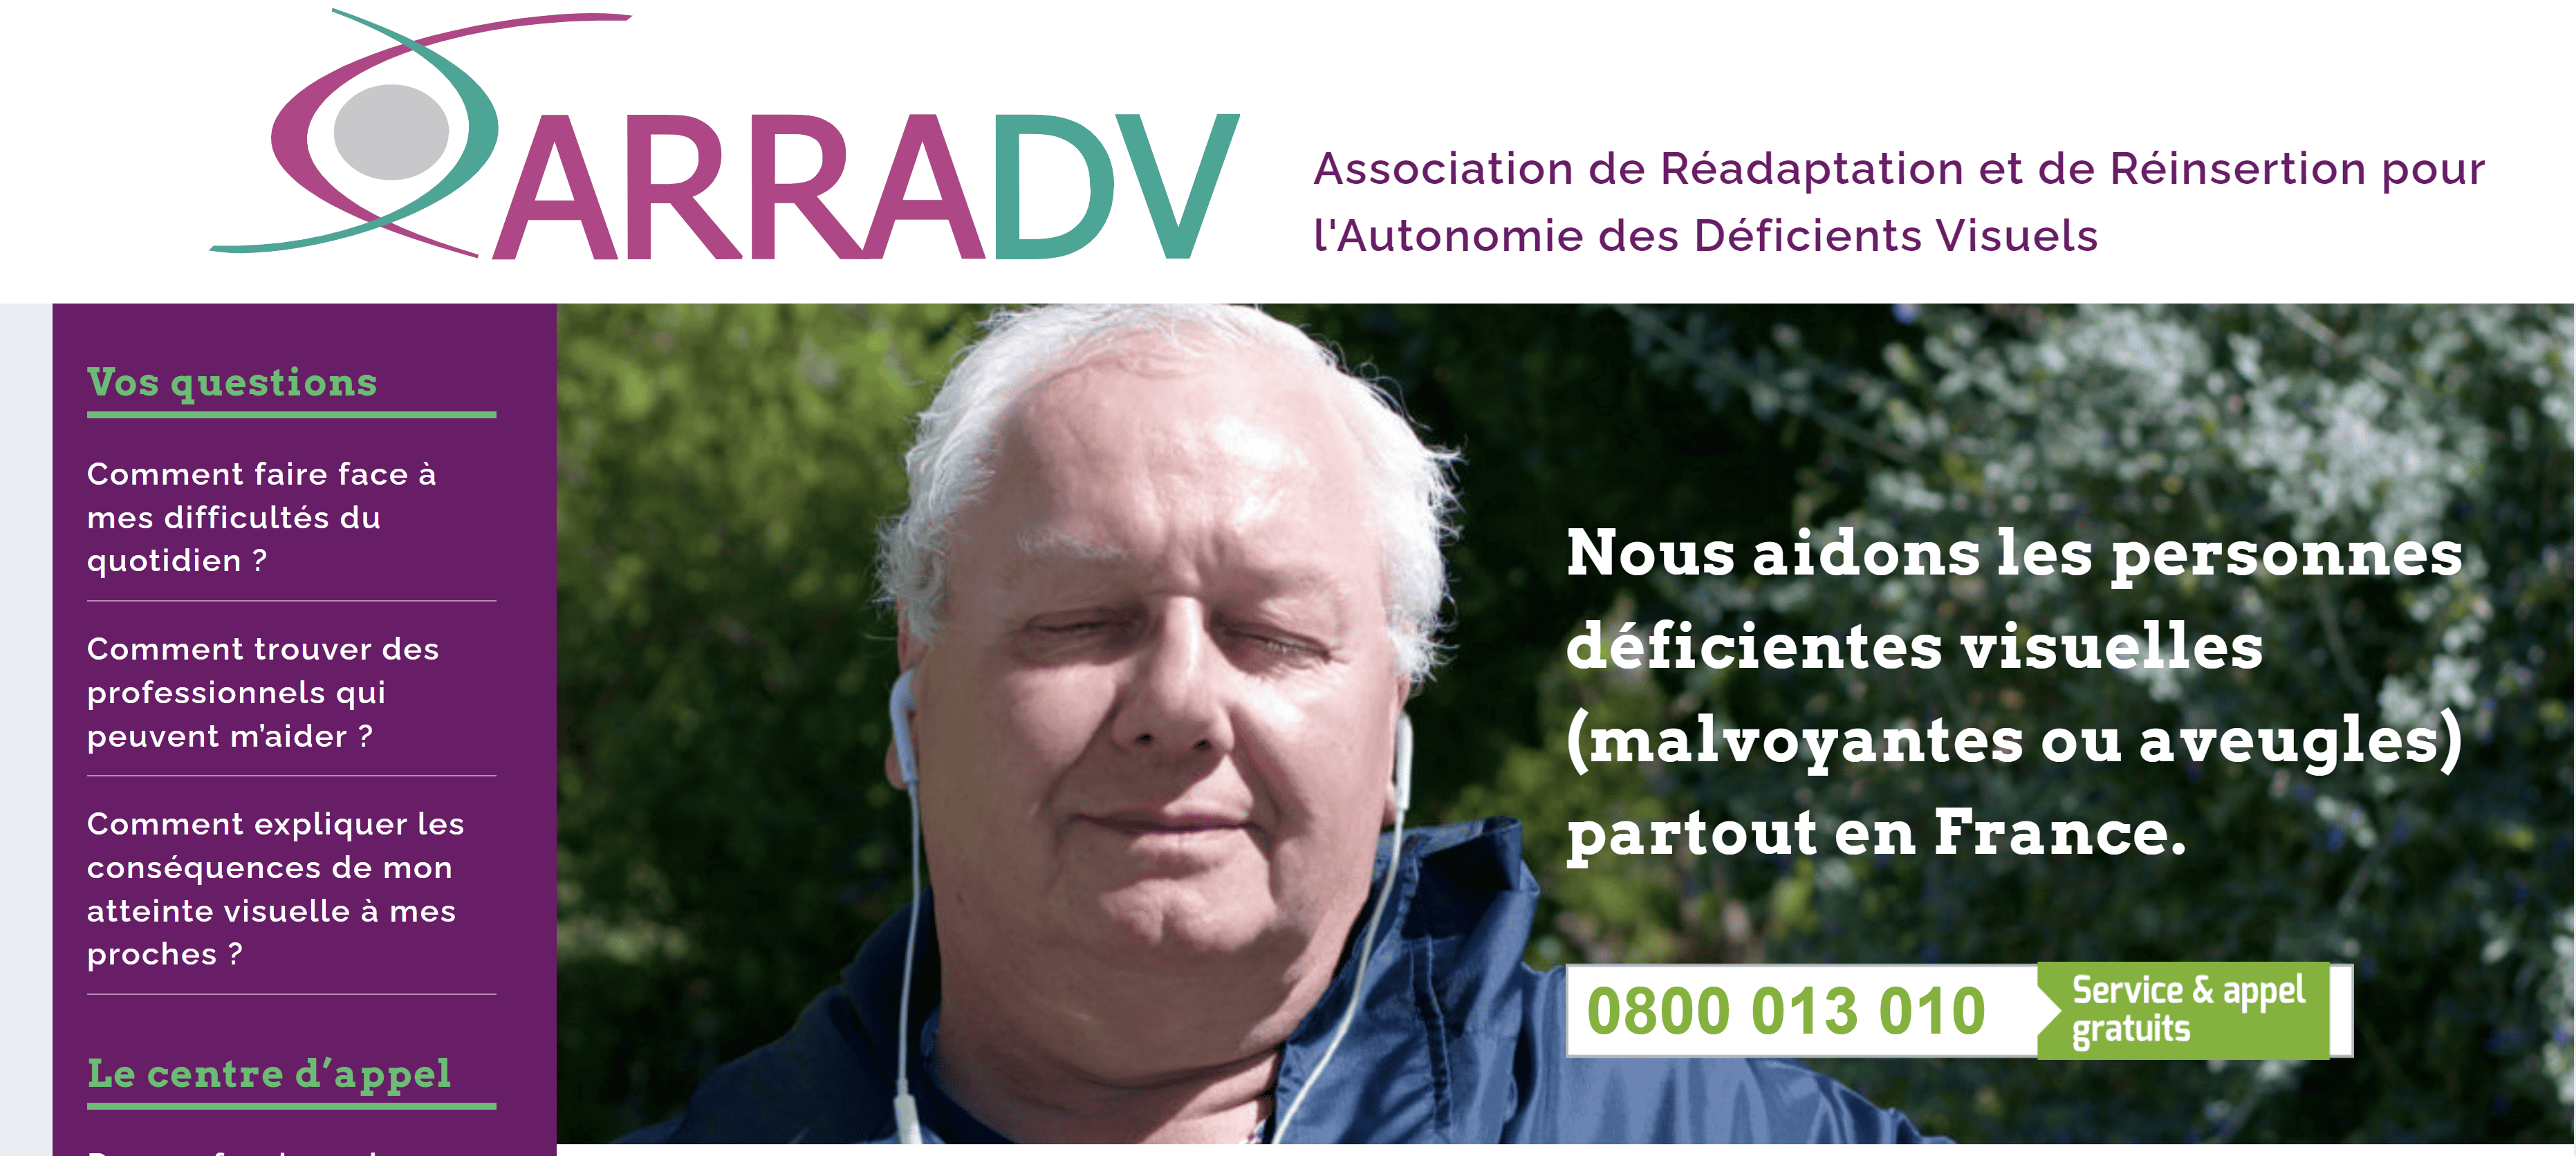 L'Association ARRADV contact